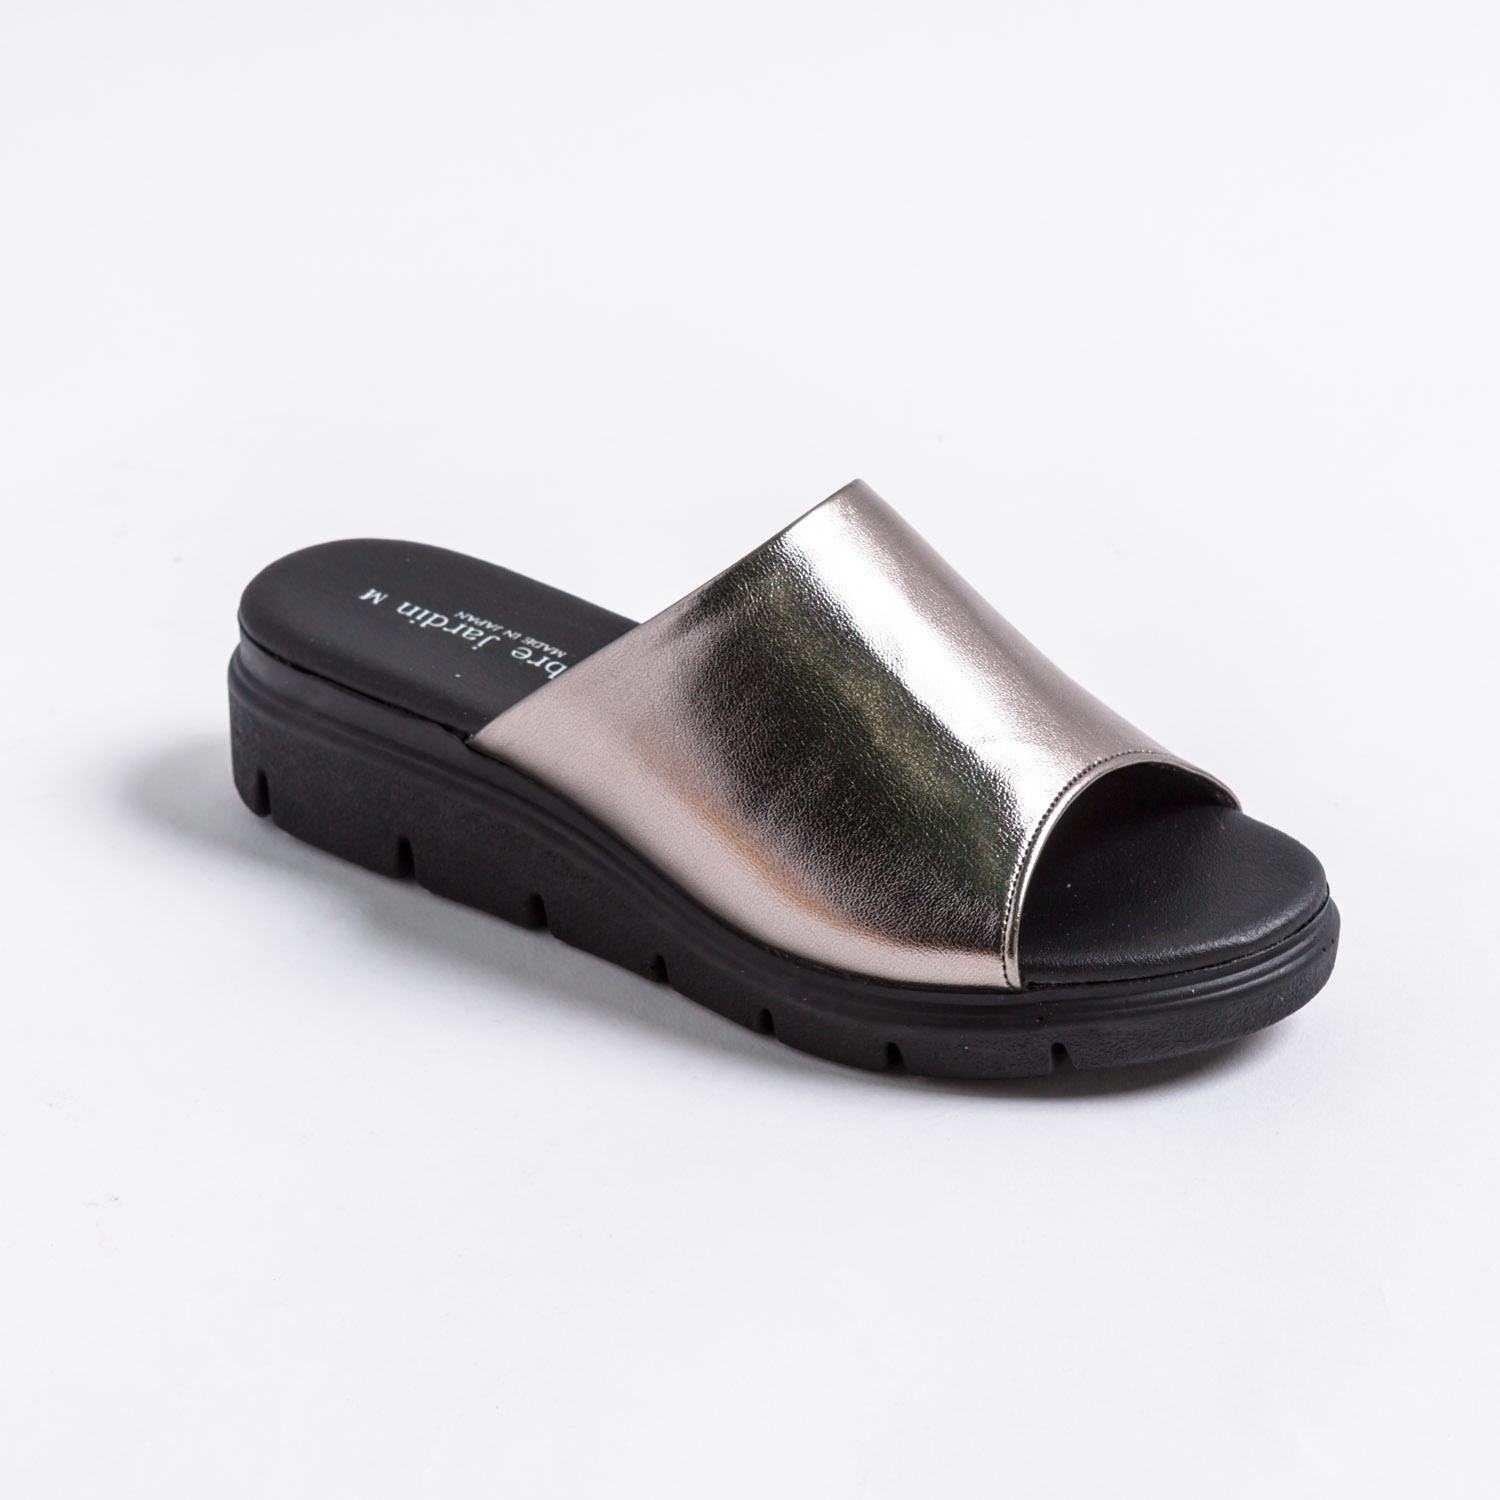 サンダル レディース つっかけ 日本製 黒 厚底 履きやすい 歩きやすい ウェッジソール サンダル